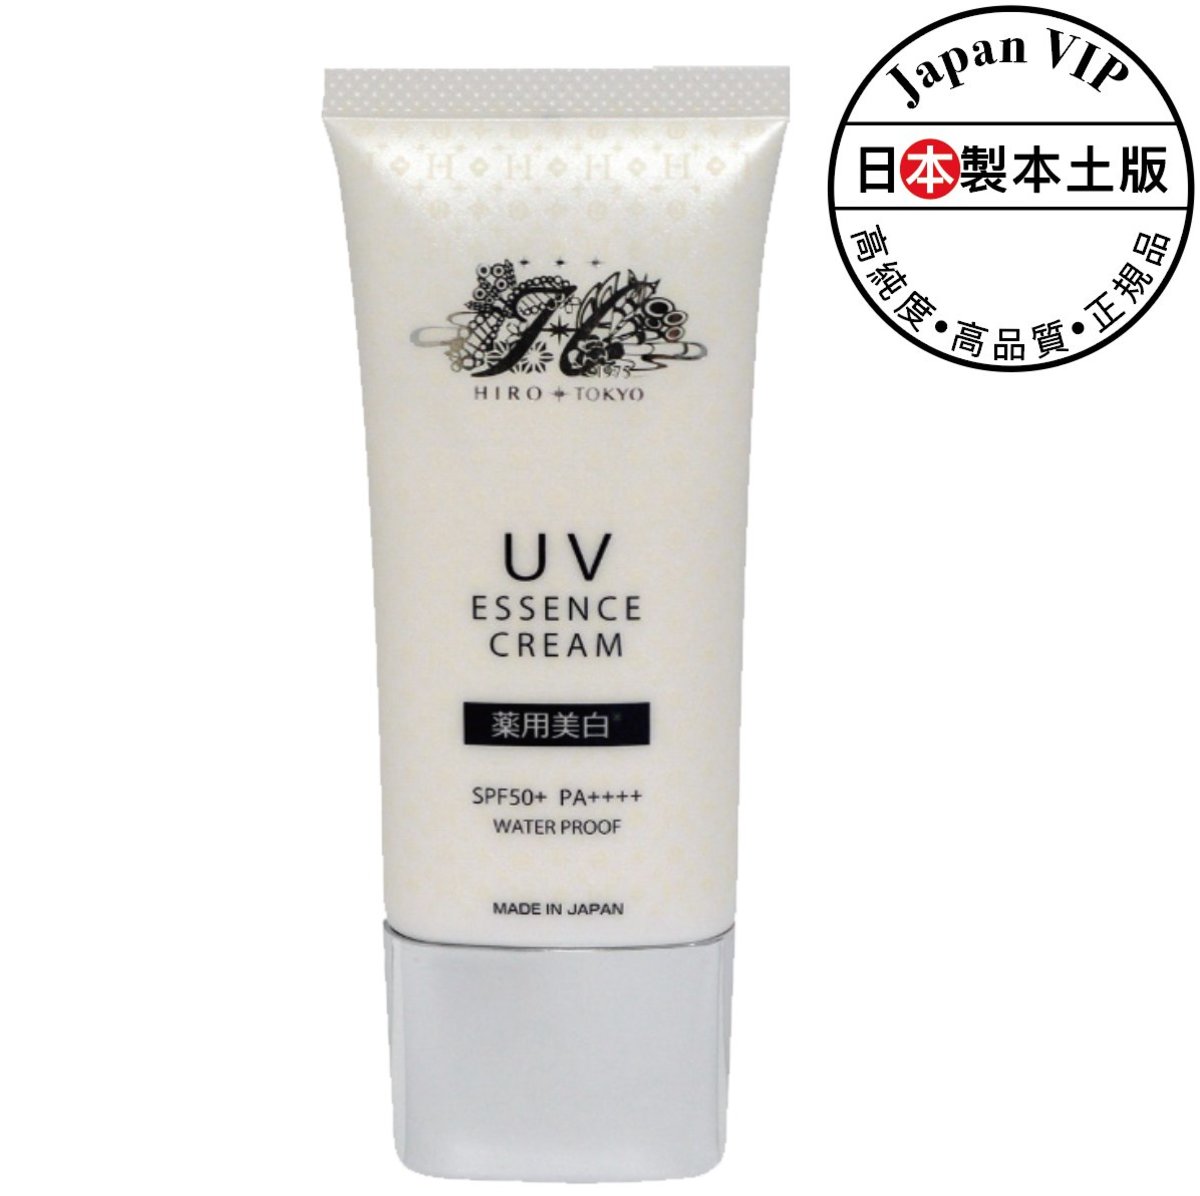 UV Essence Cream